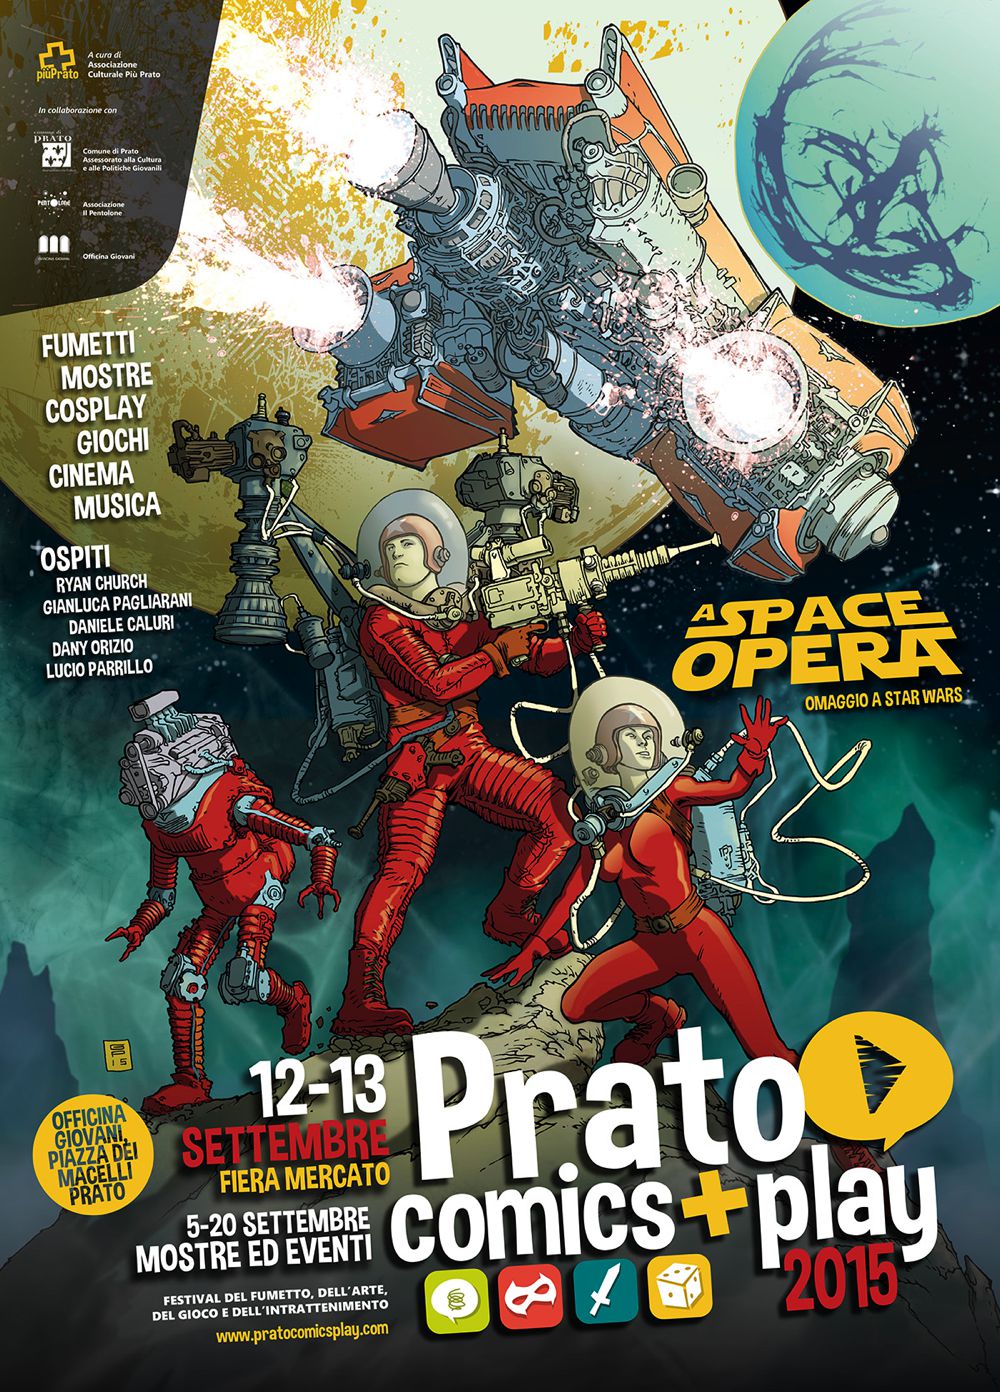 Prato Comics + Play 2015